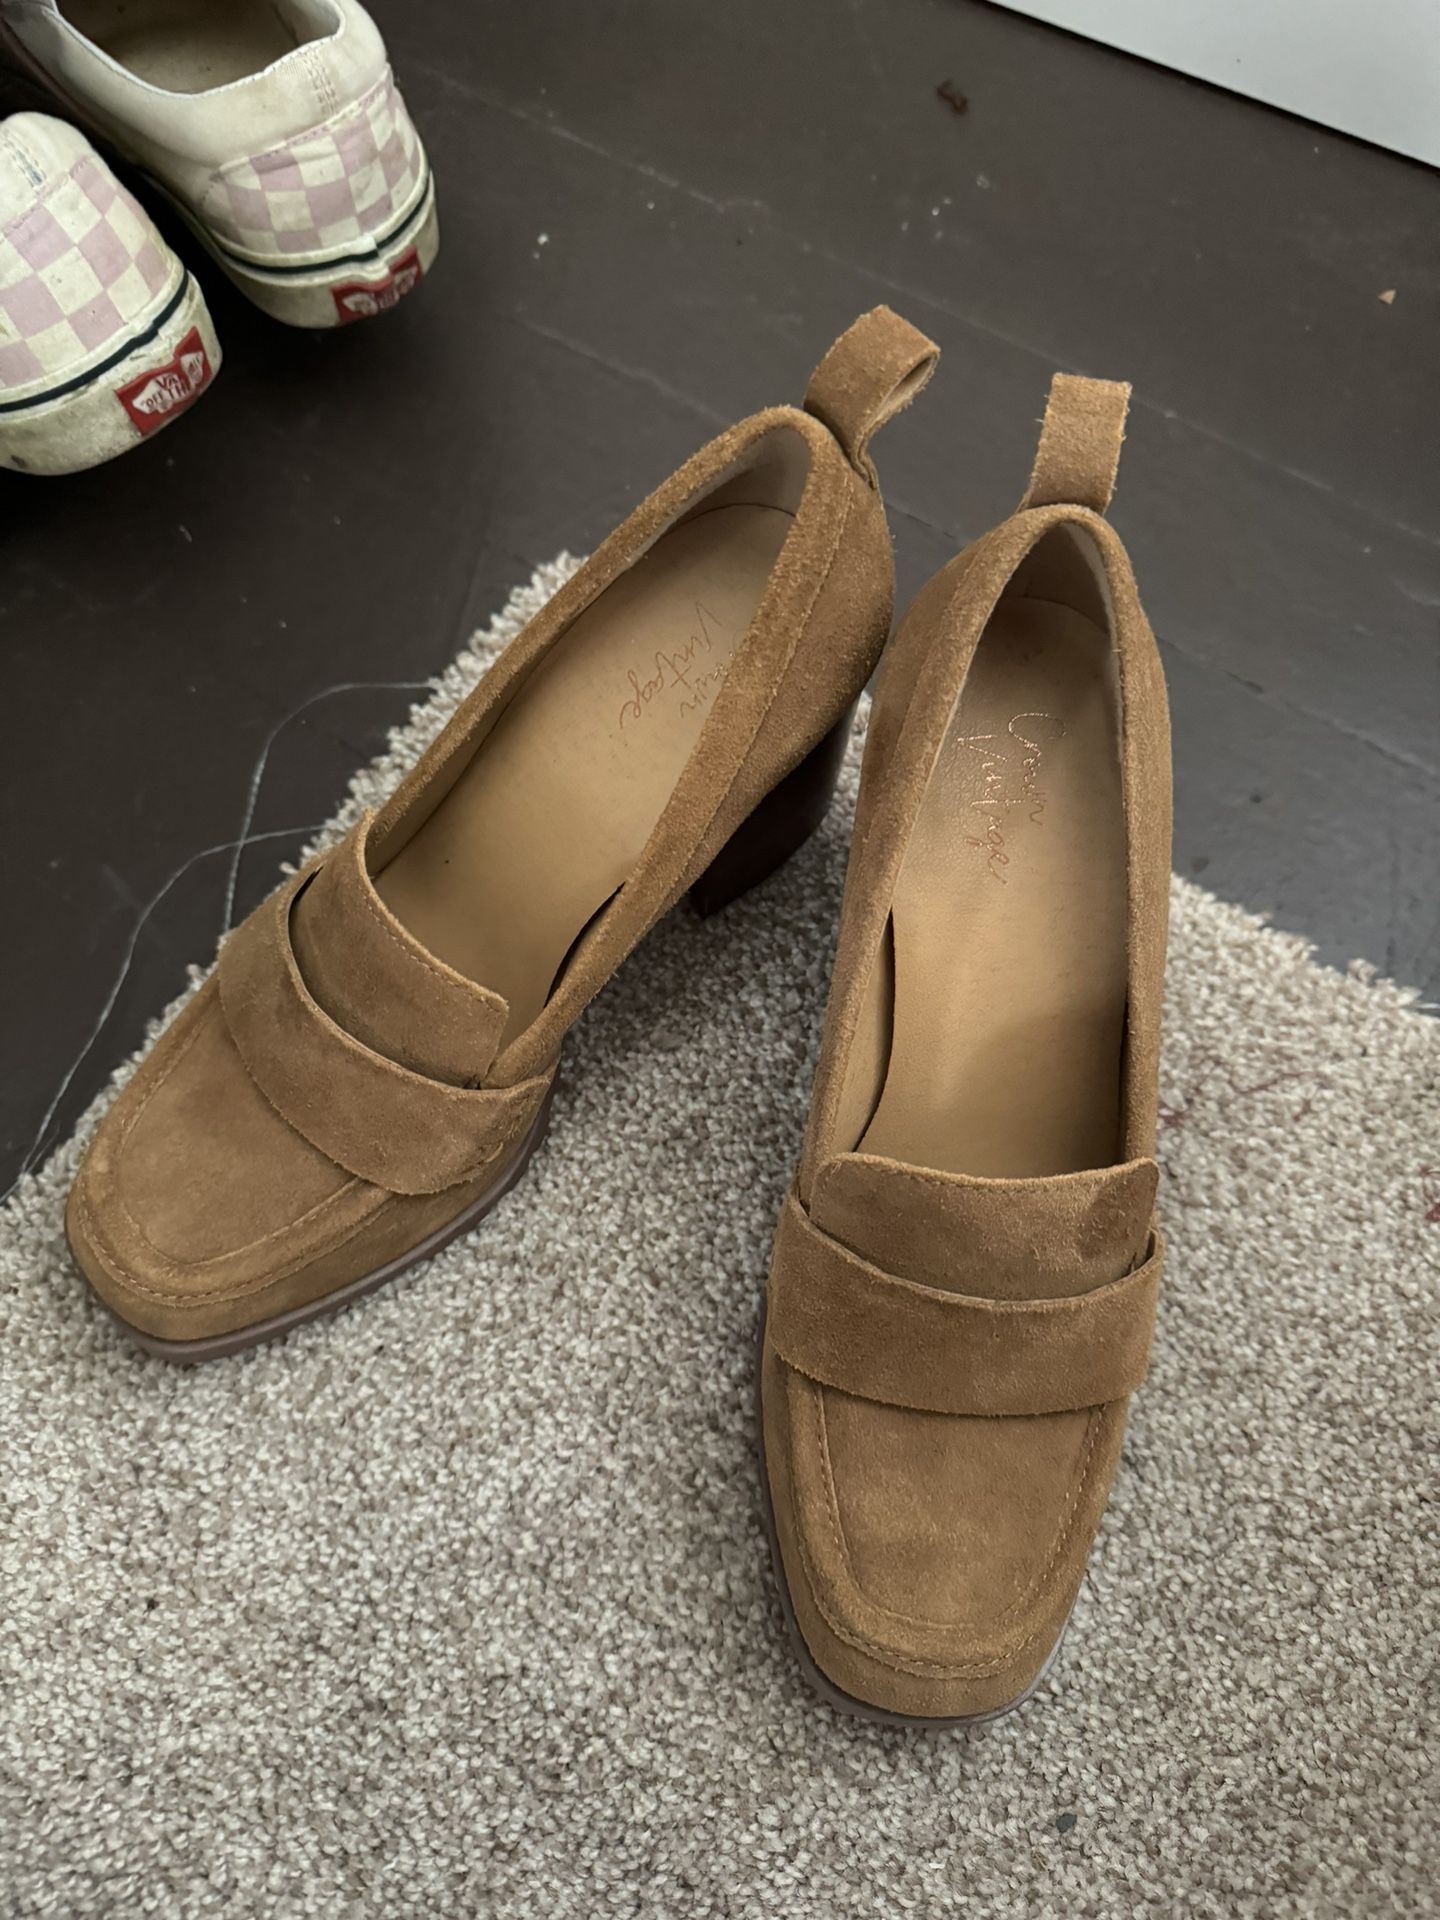 Cute Brown Heels